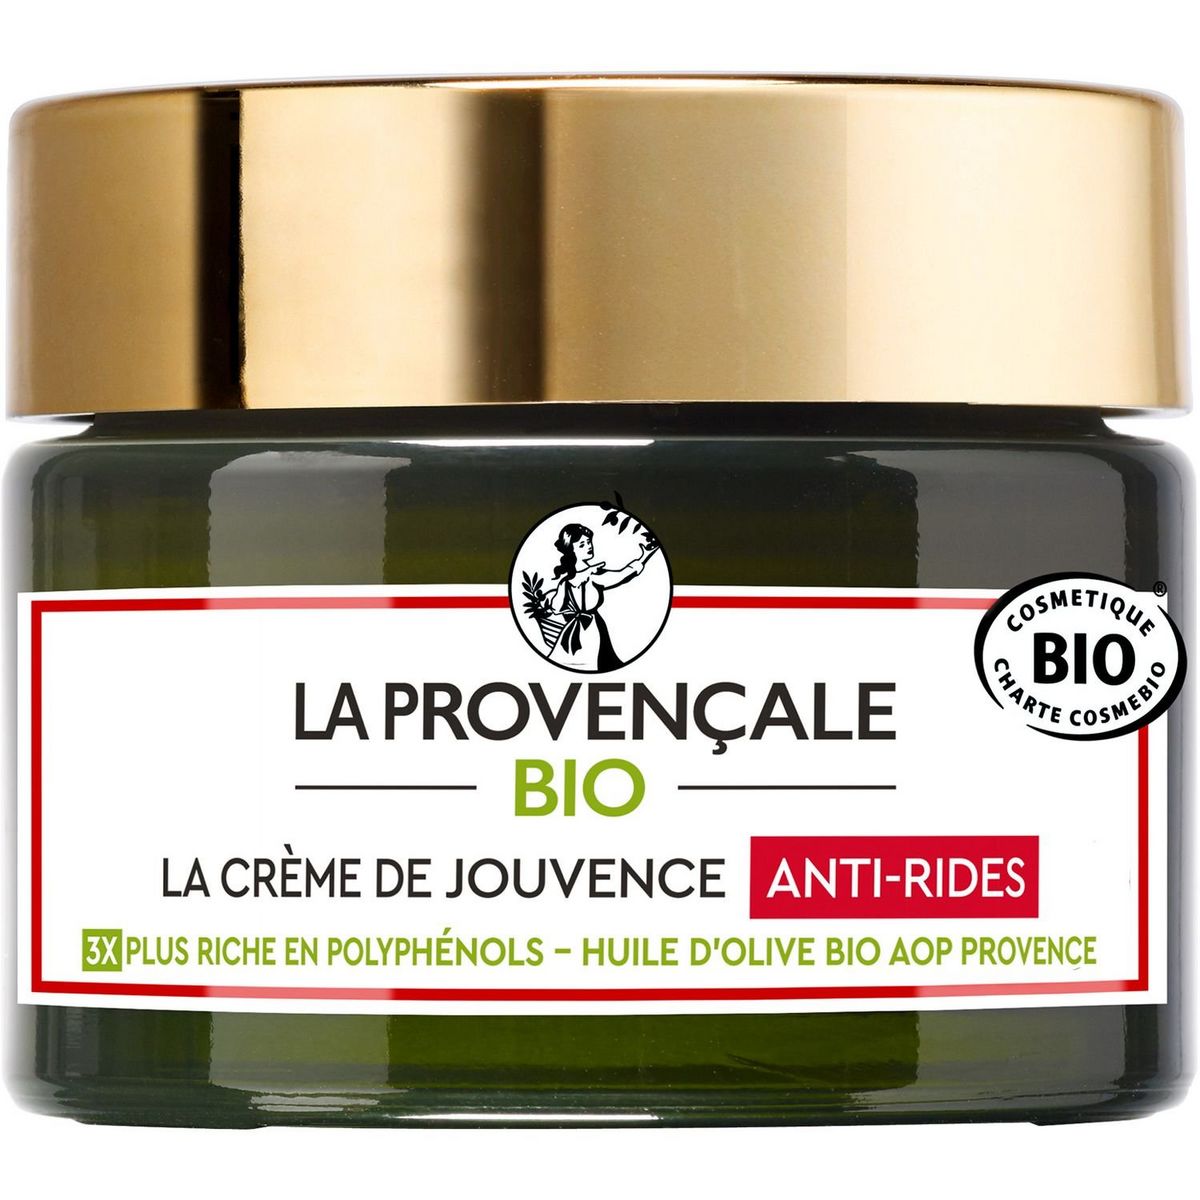 LA PROVENCALE BIO Crème de jouvence anti-rides à l'huile d'olive bio 50ml